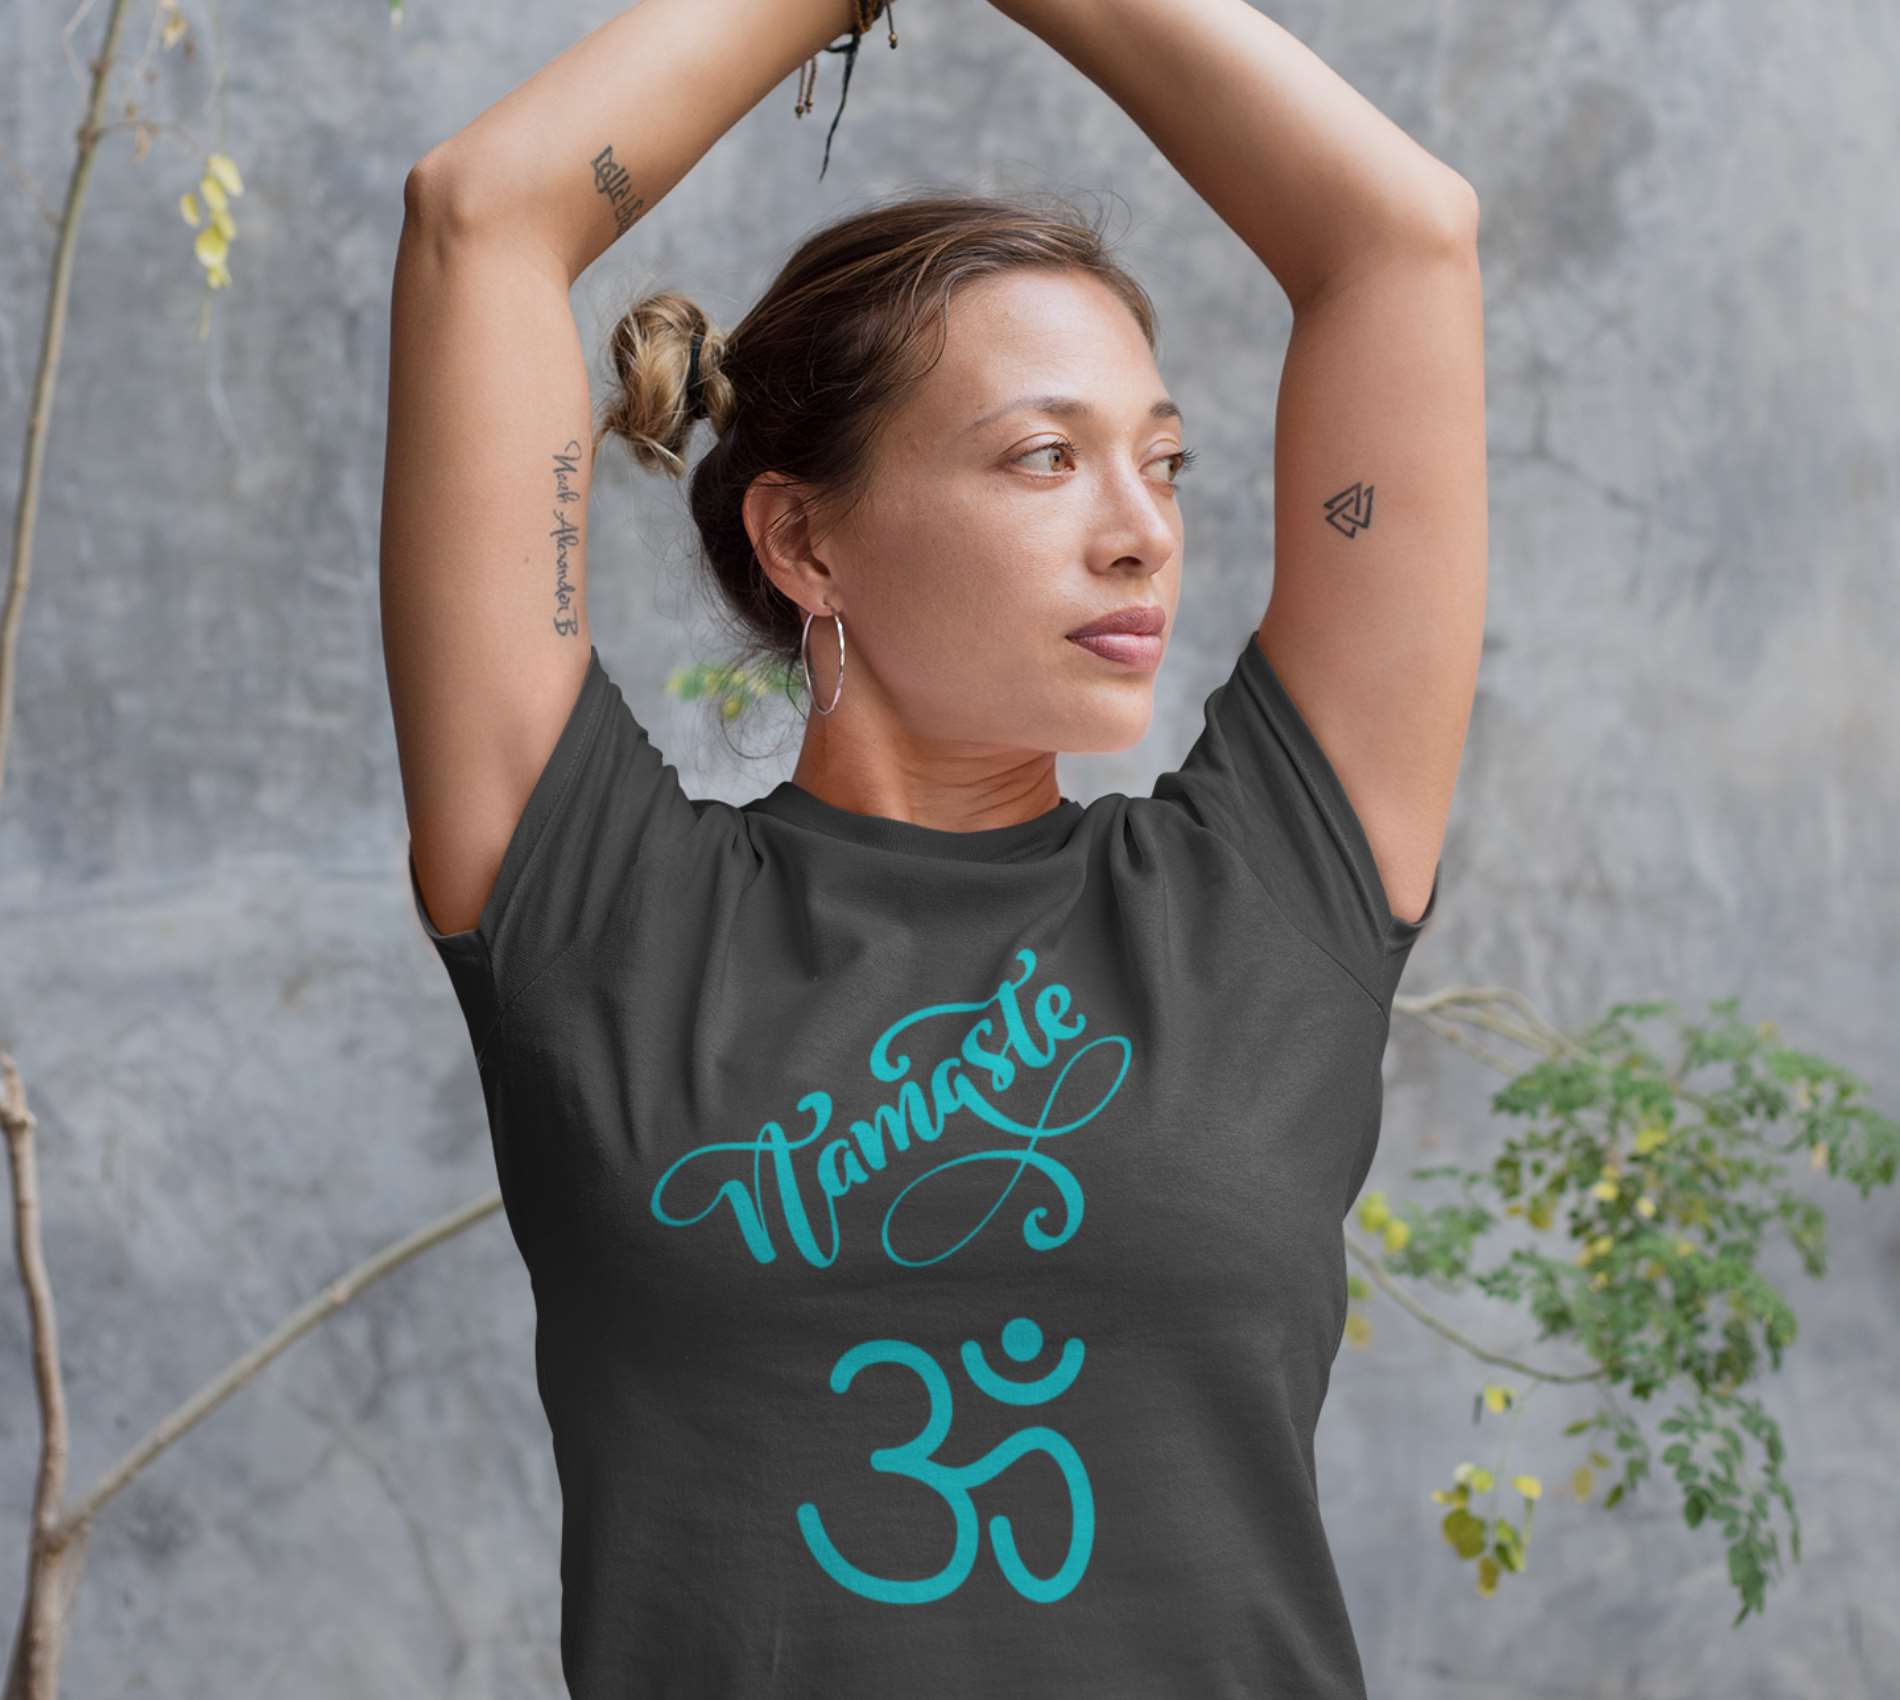 Namaste drôle idée cadeau spirituel yoga yogi' T-shirt premium